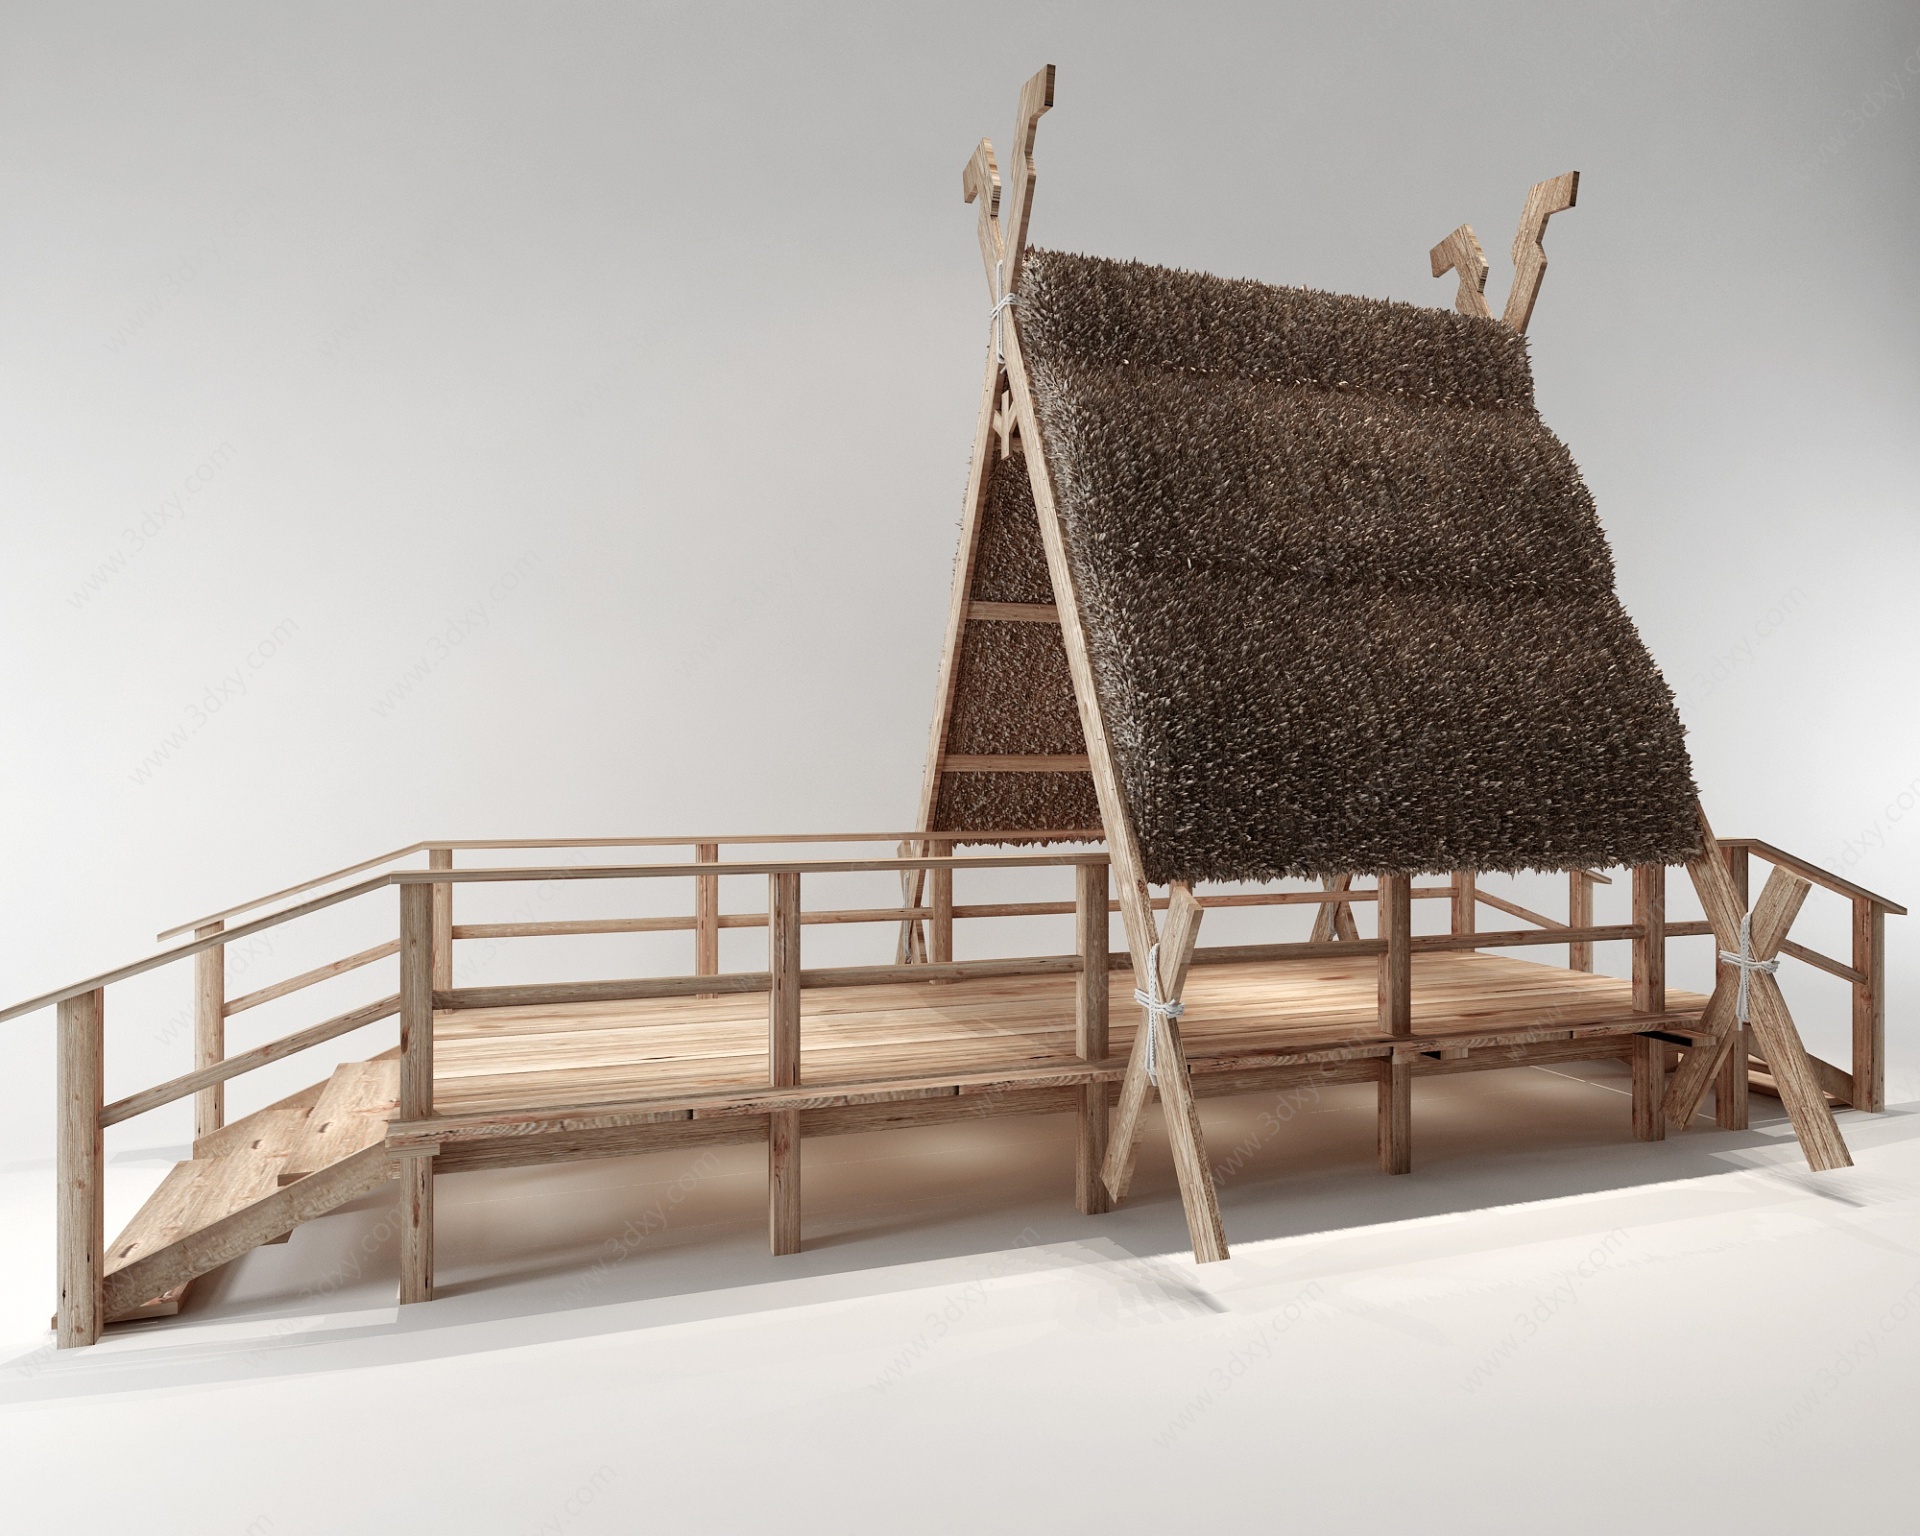 中式桥雨棚景观小品栏杆3D模型